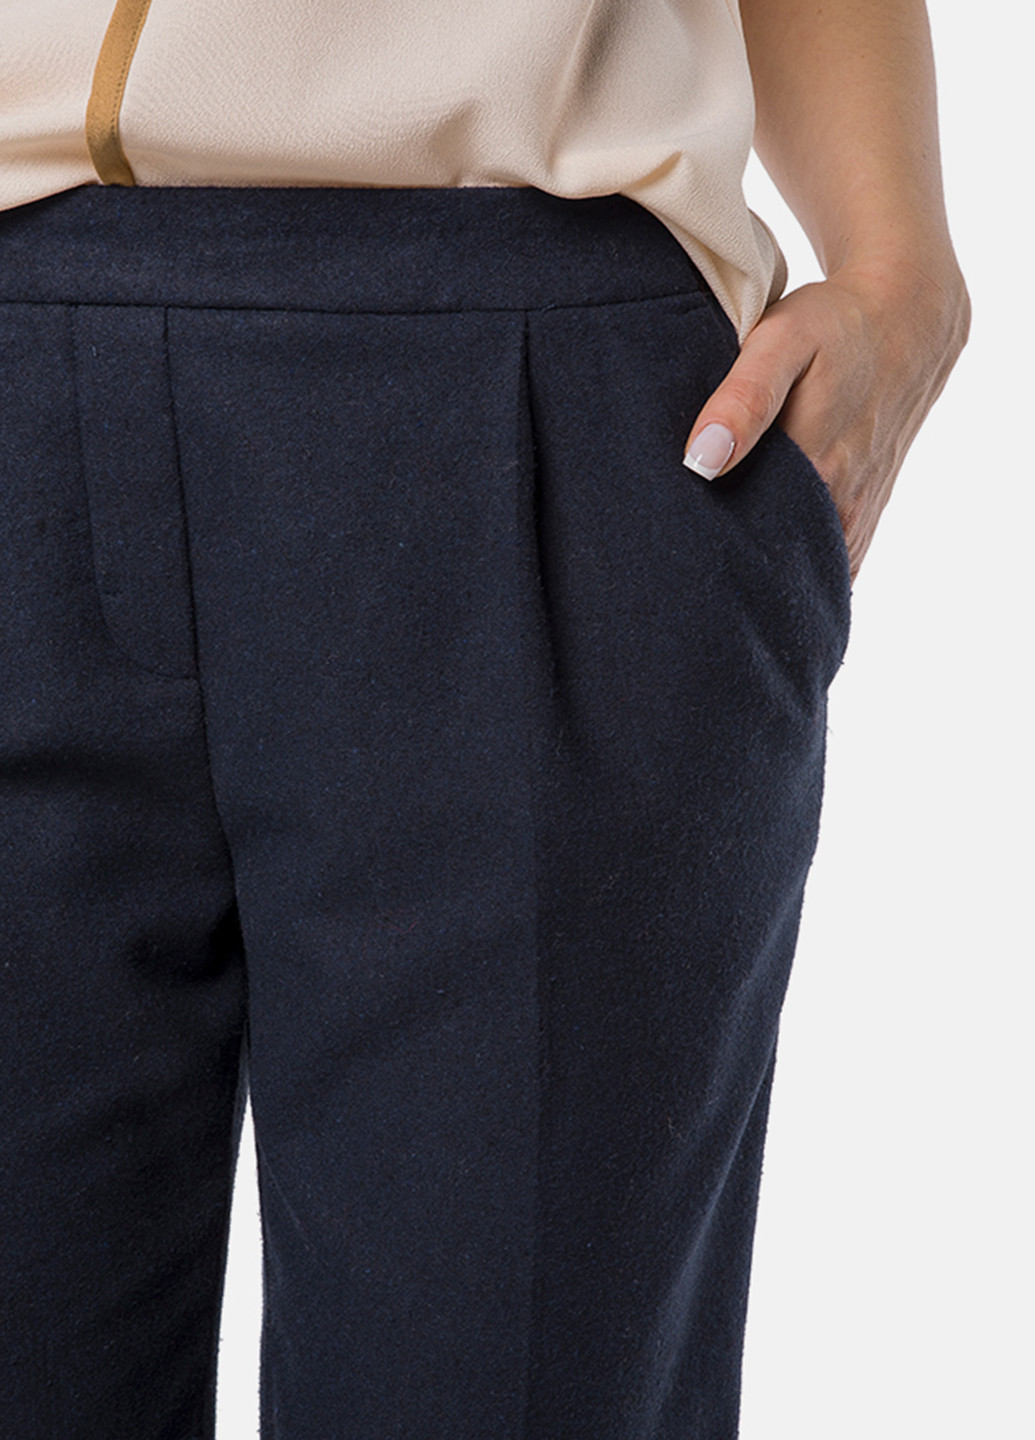 Темно-синие кэжуал демисезонные брюки MR 520